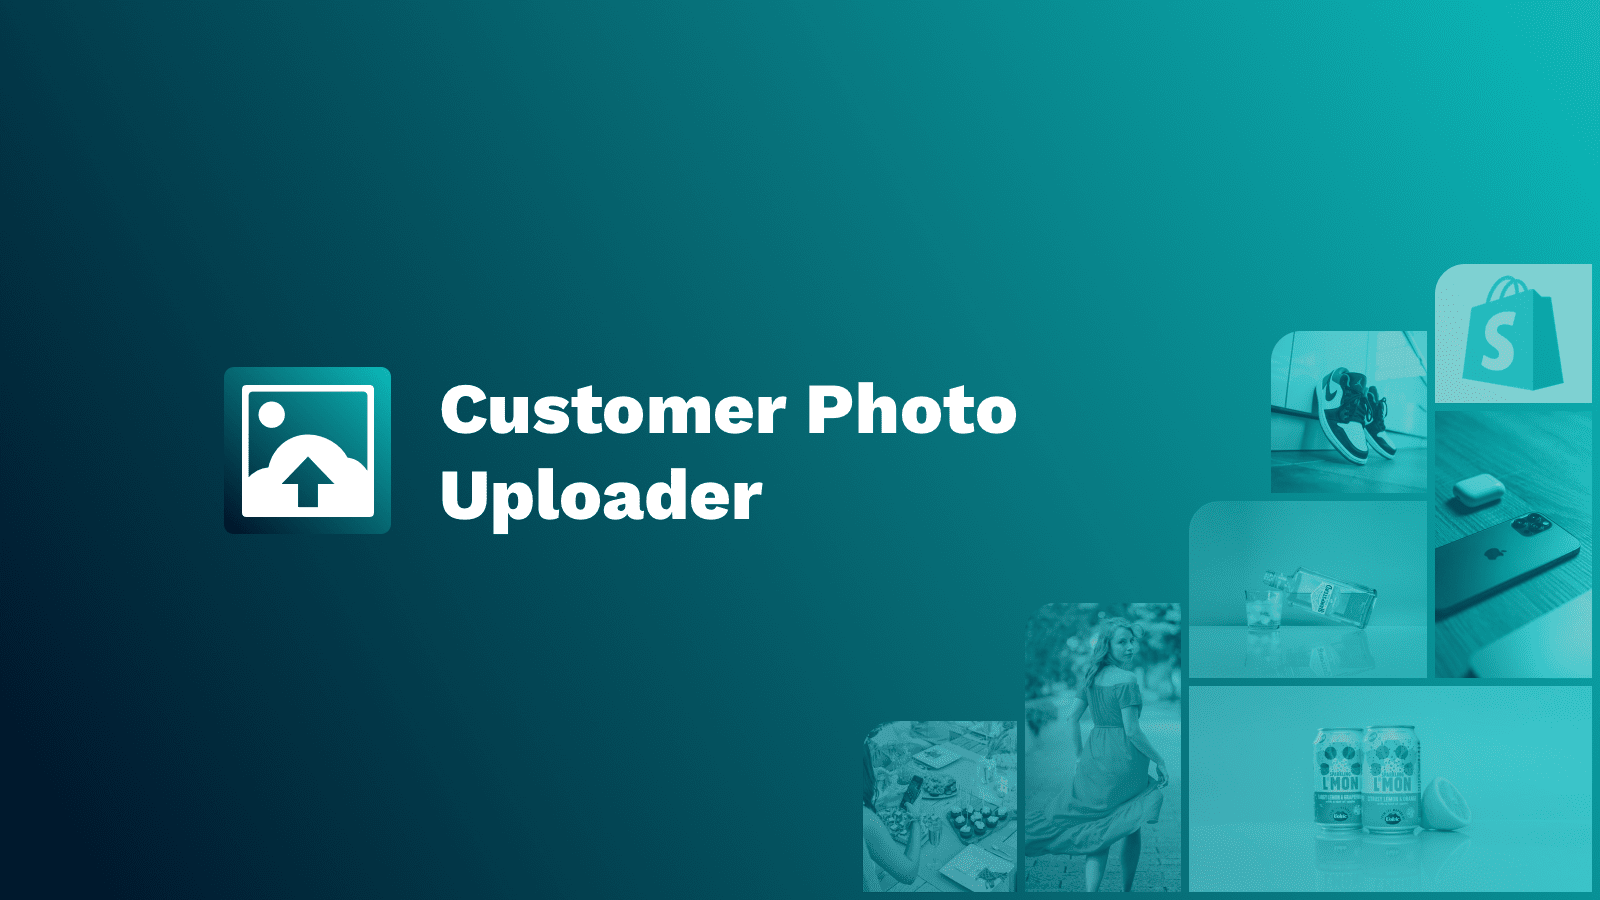 Kunde foto uploader app til billeder skabt af kunder